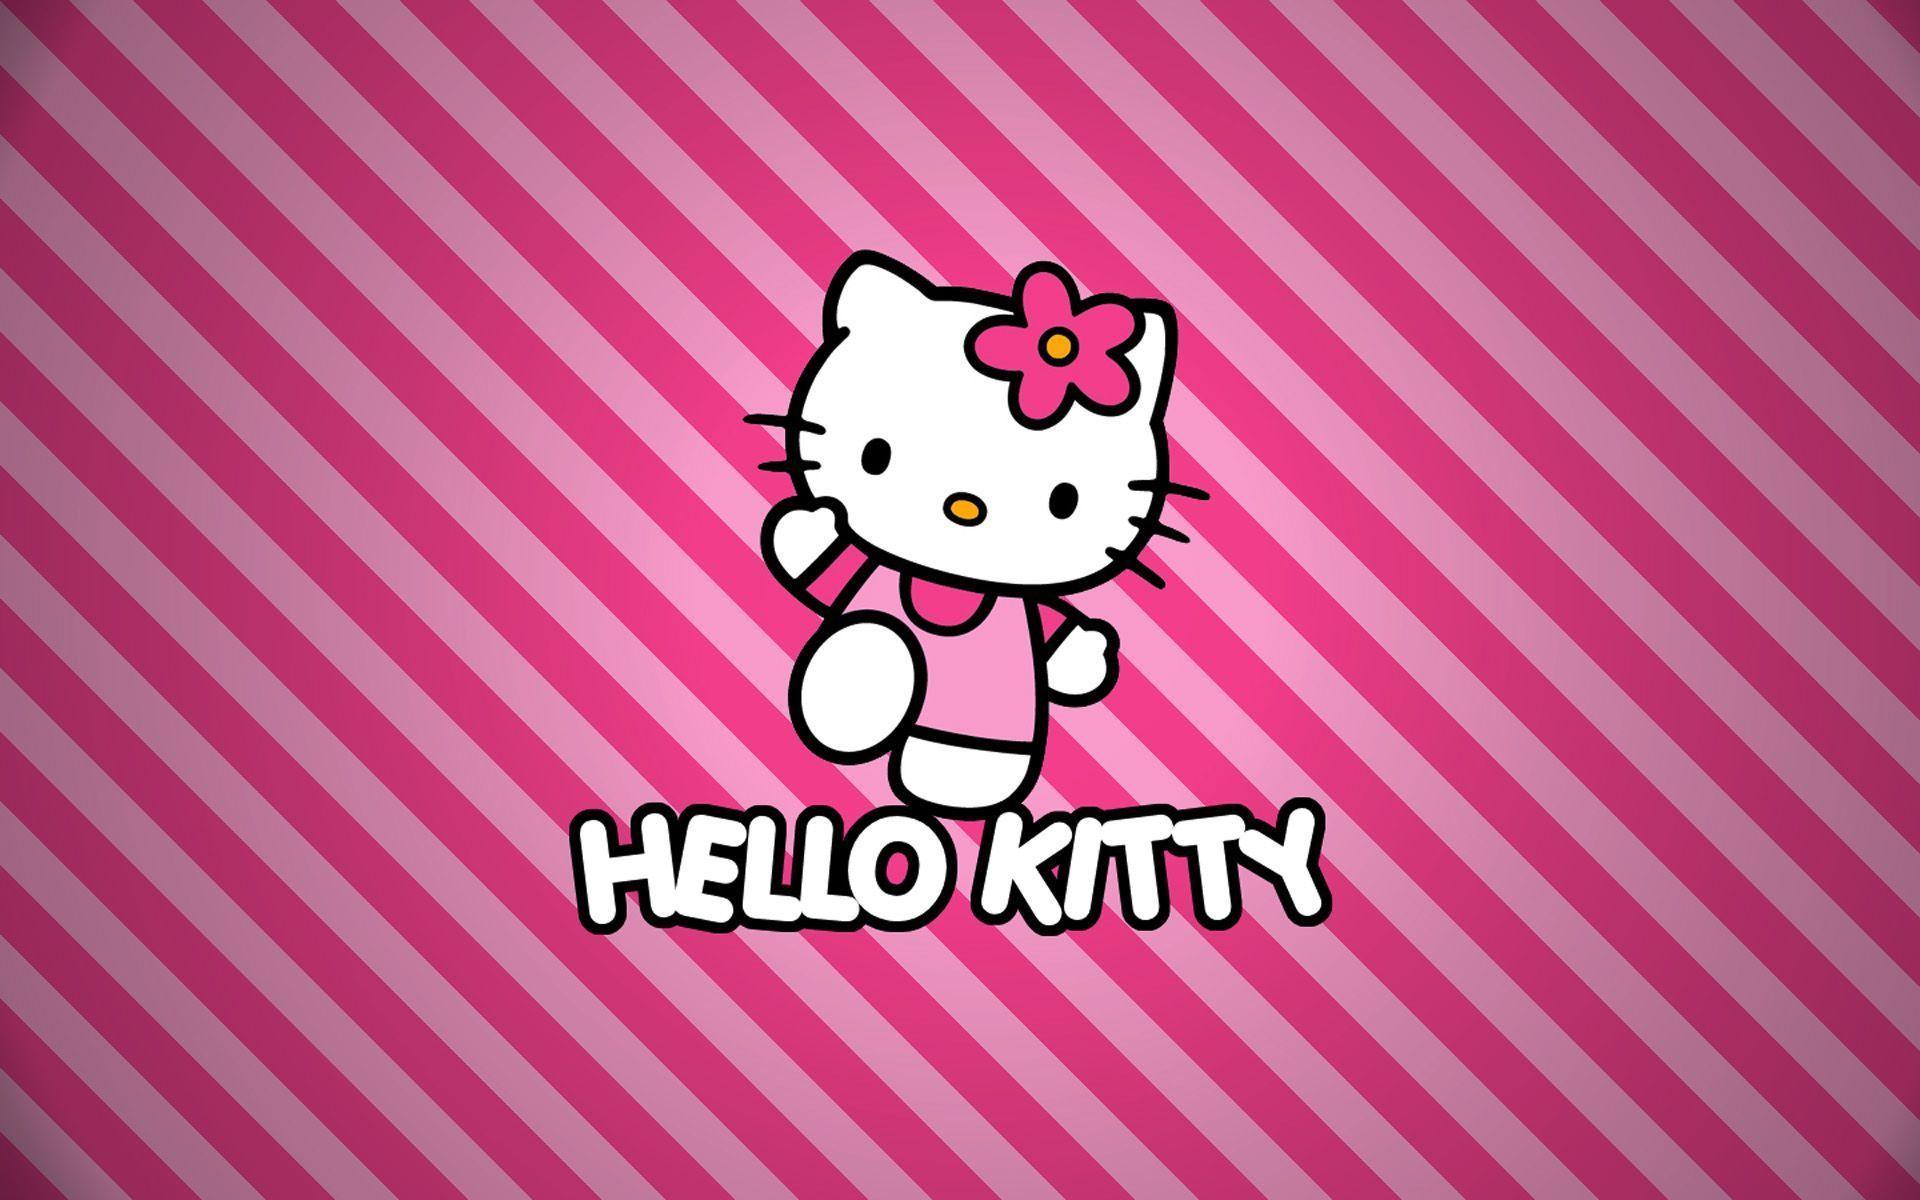 Hello Kitty: Đón xem hình ảnh siêu dễ thương của cô mèo Hello Kitty. Với thiết kế đáng yêu và tươi sáng, Hello Kitty đã trở thành biểu tượng của nhiều bạn trẻ. Hãy đến và khám phá thế giới kỳ diệu của cô mèo xinh đẹp này. 